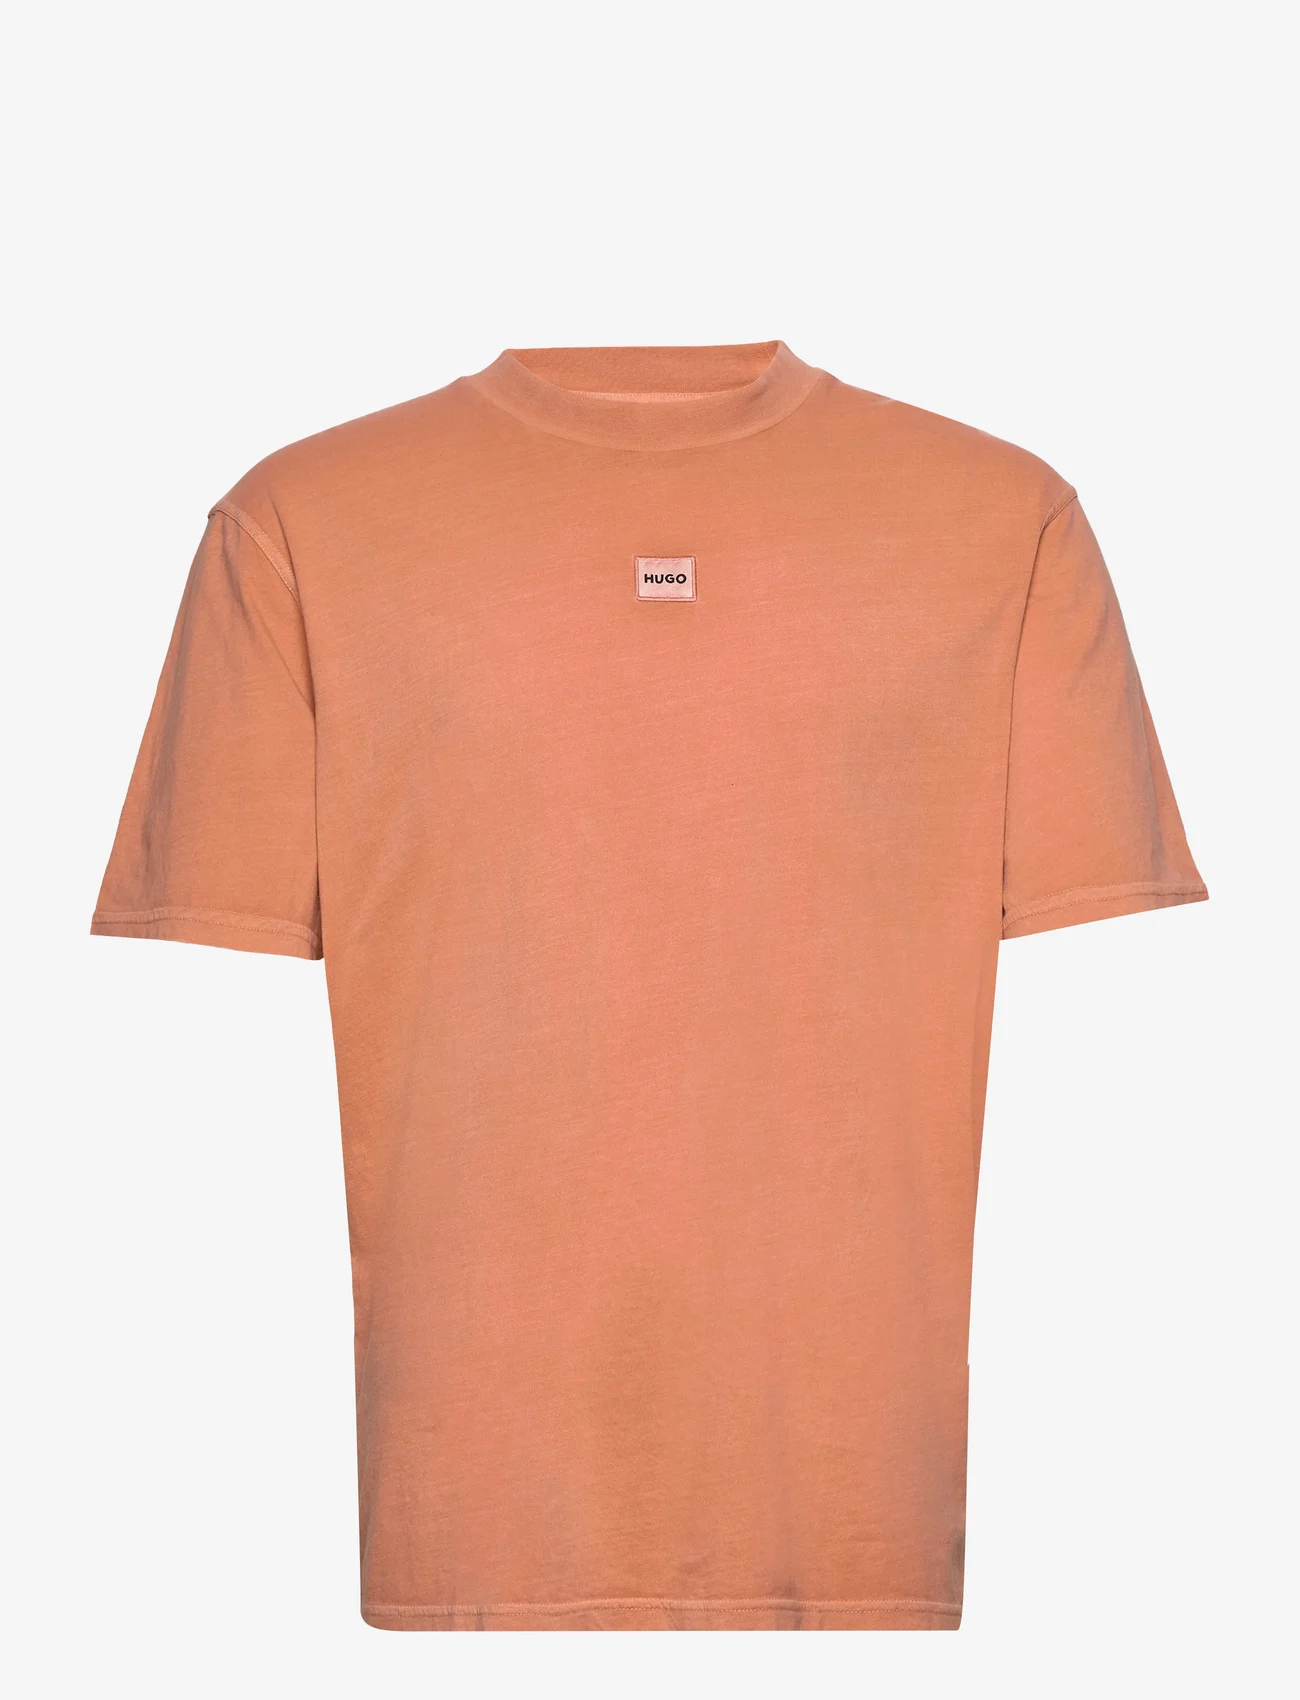 HUGO - Direzzi - basic t-shirts - open orange - 0